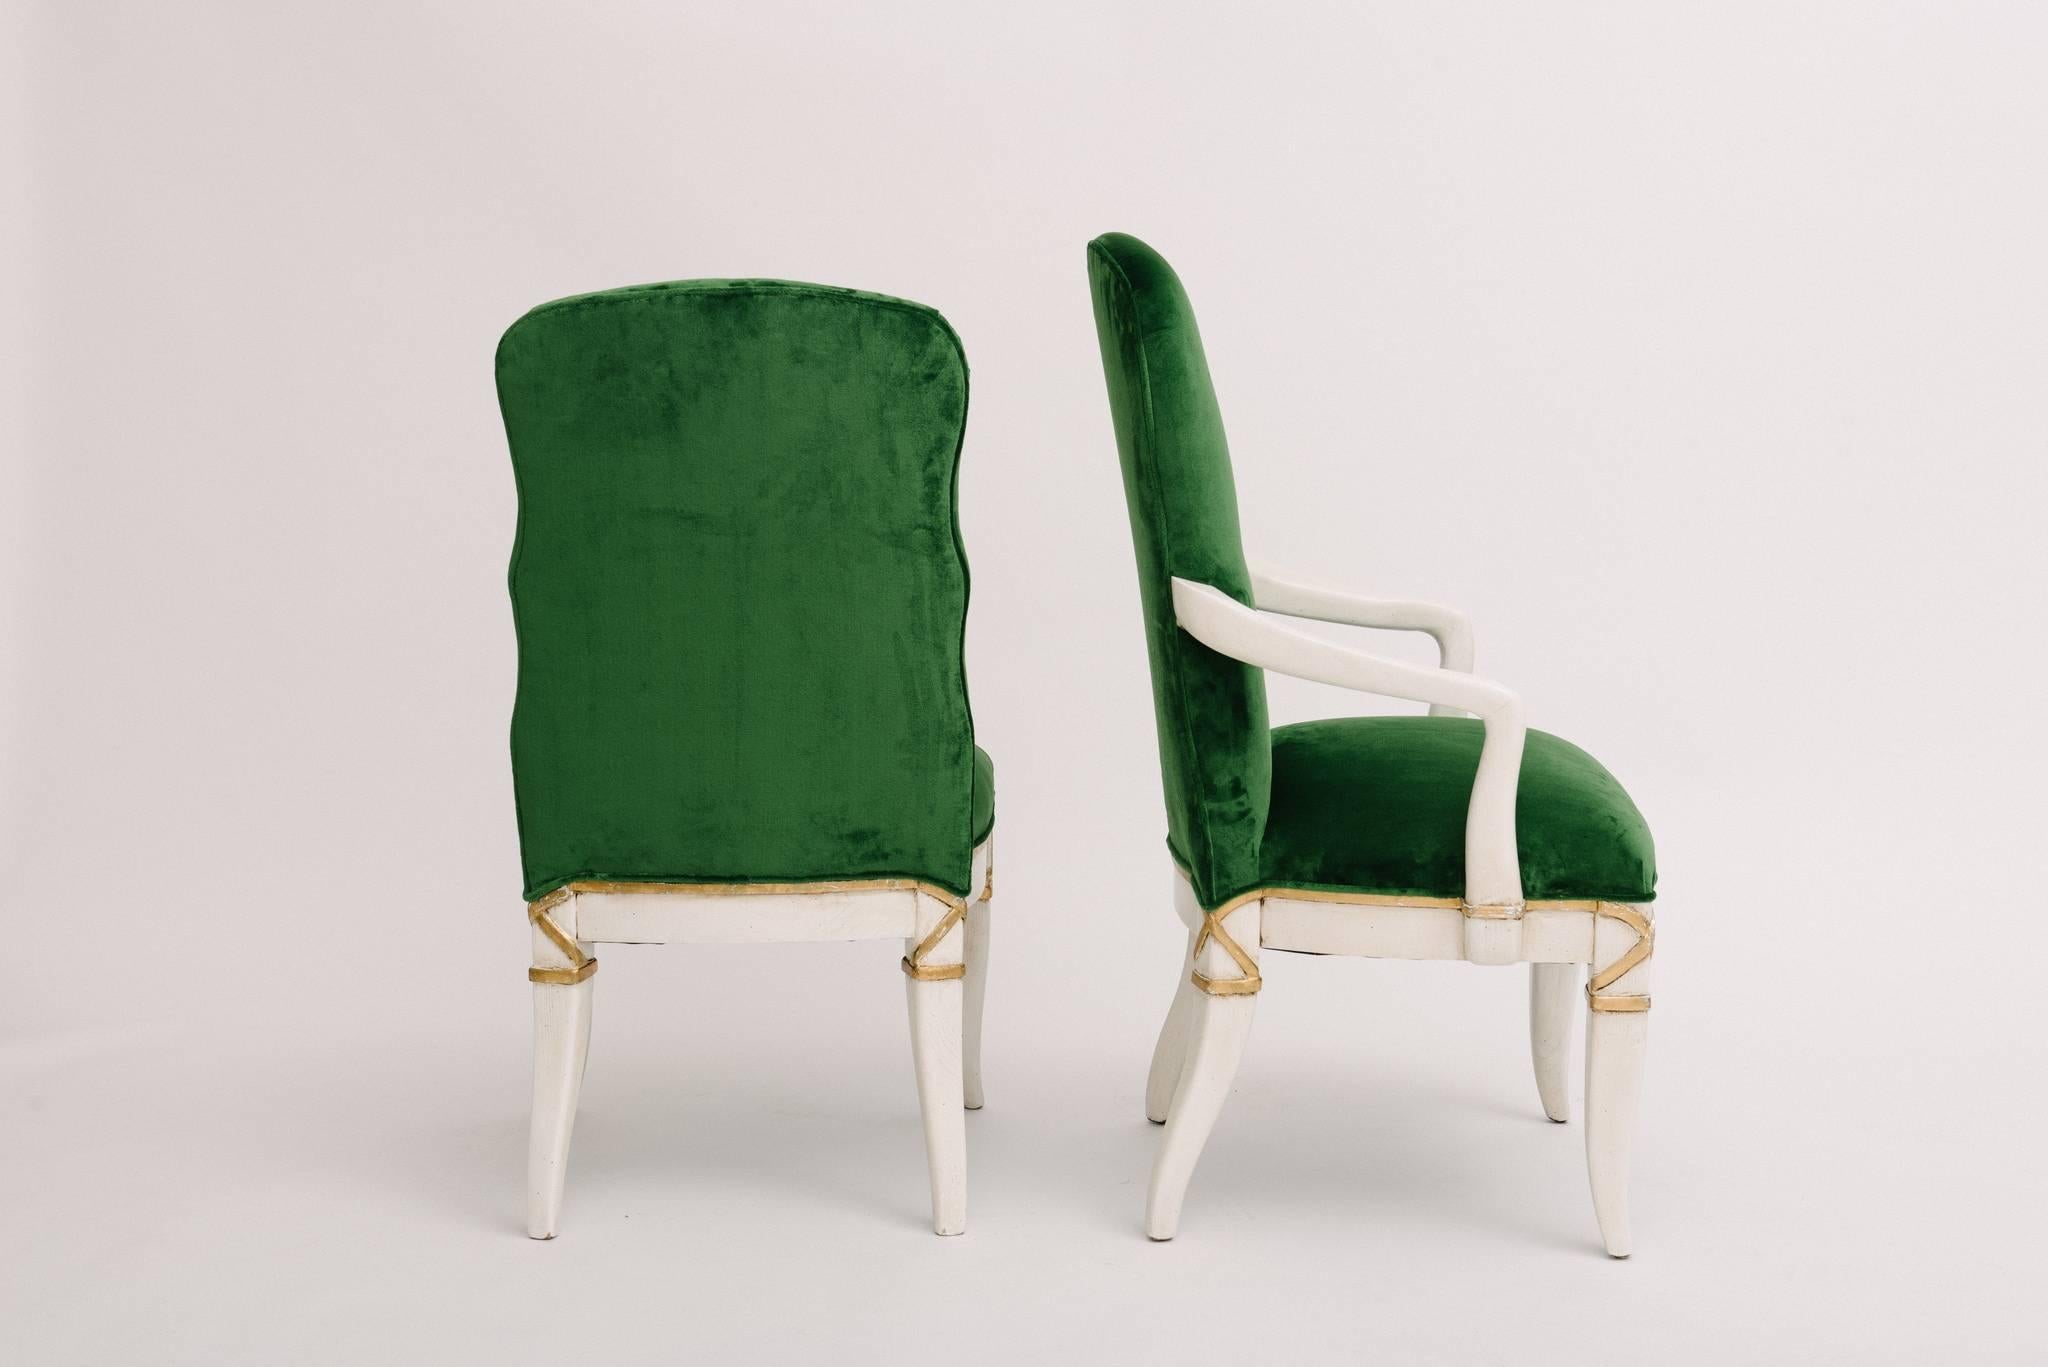 Ein fabelhaftes Set von zehn Marge Carsons Esszimmerstühlen. Diese robusten und bequemen Eichenstühle sind weiß lackiert und vergoldet, neu aufgebaut und mit einem grünen Samt von Rubelli Matora Smeraldo bezogen. Ein Stoffzuschnitt ist auf Anfrage